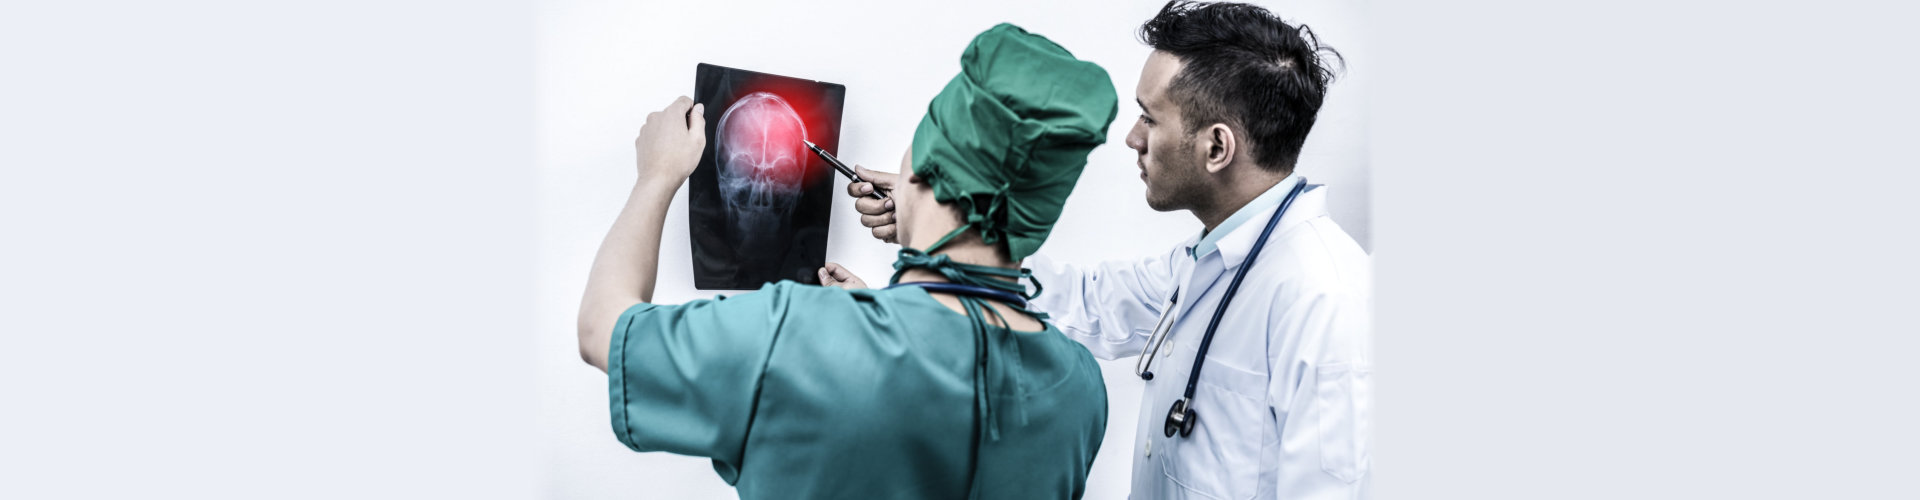 brain injury check-up